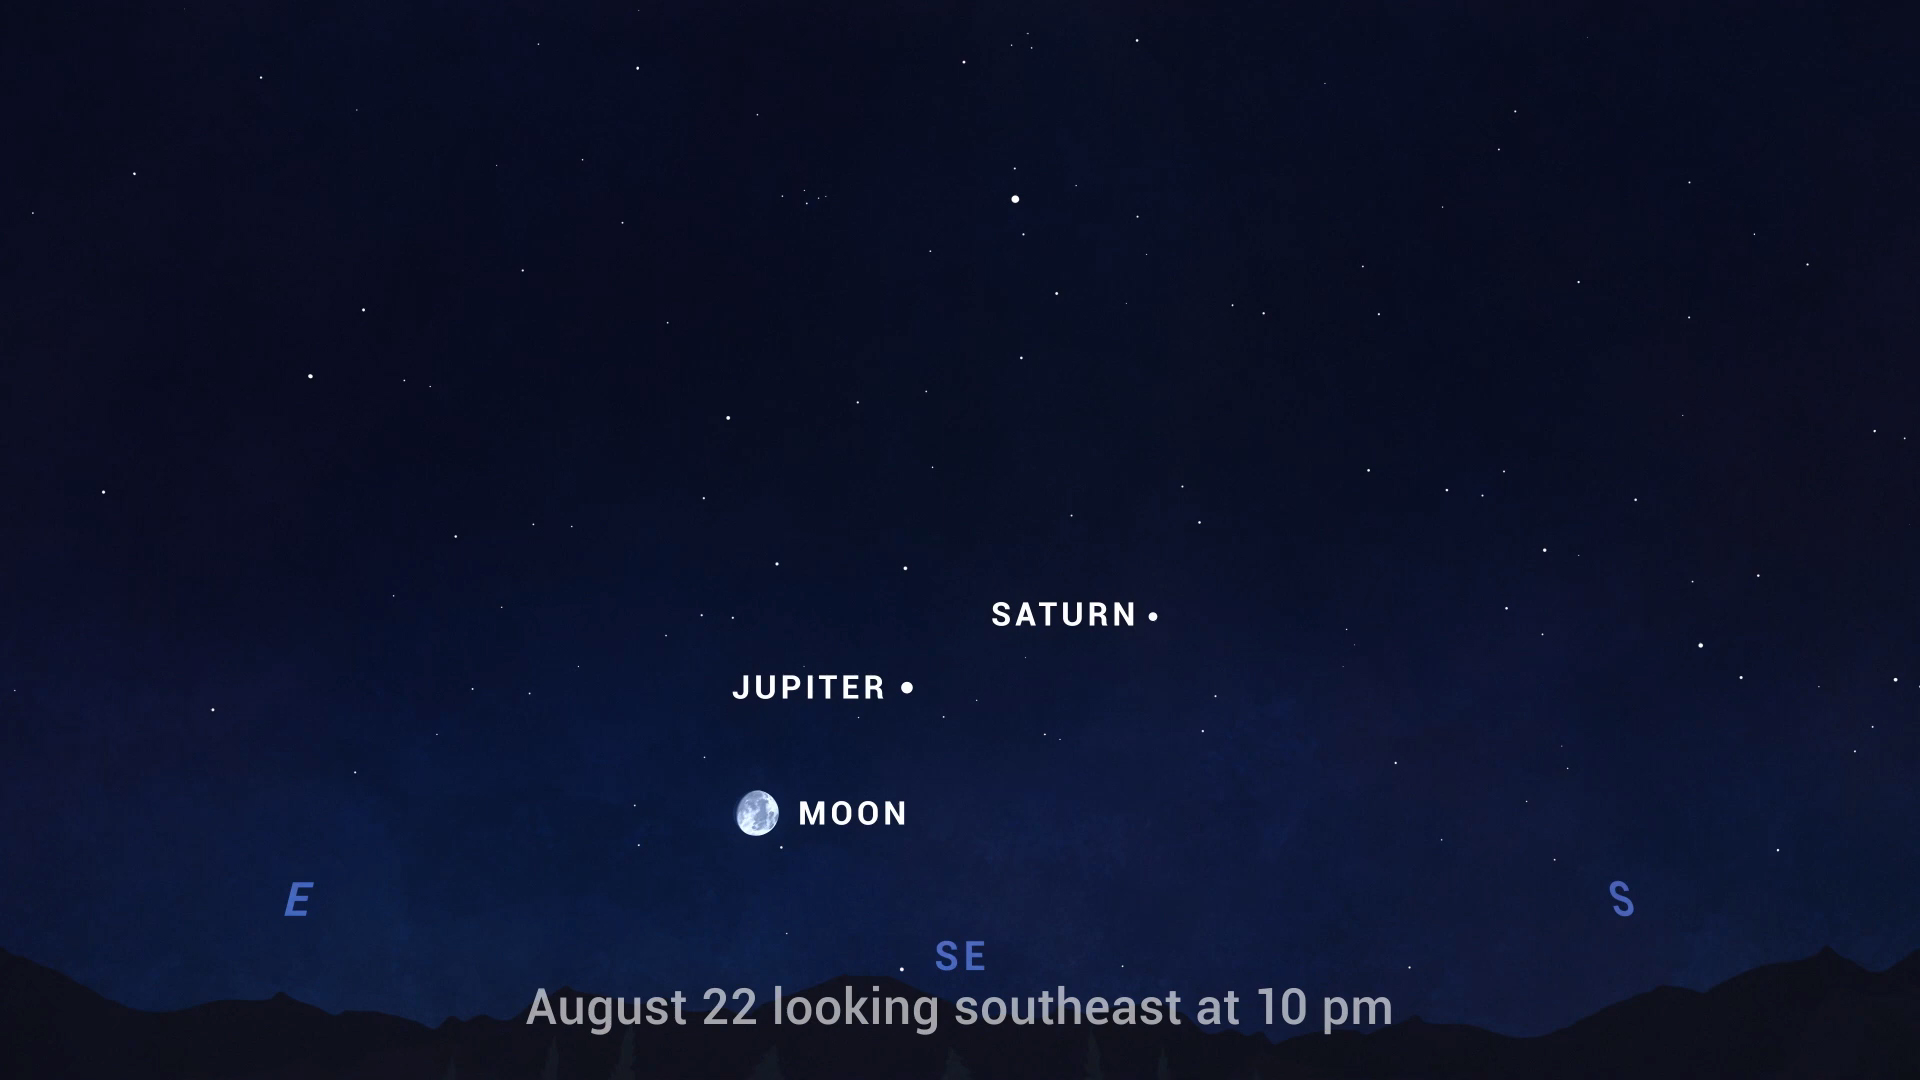 A NASA divulgou um mapa do céu para ajudar a observar o fenômeno em 22 de agosto